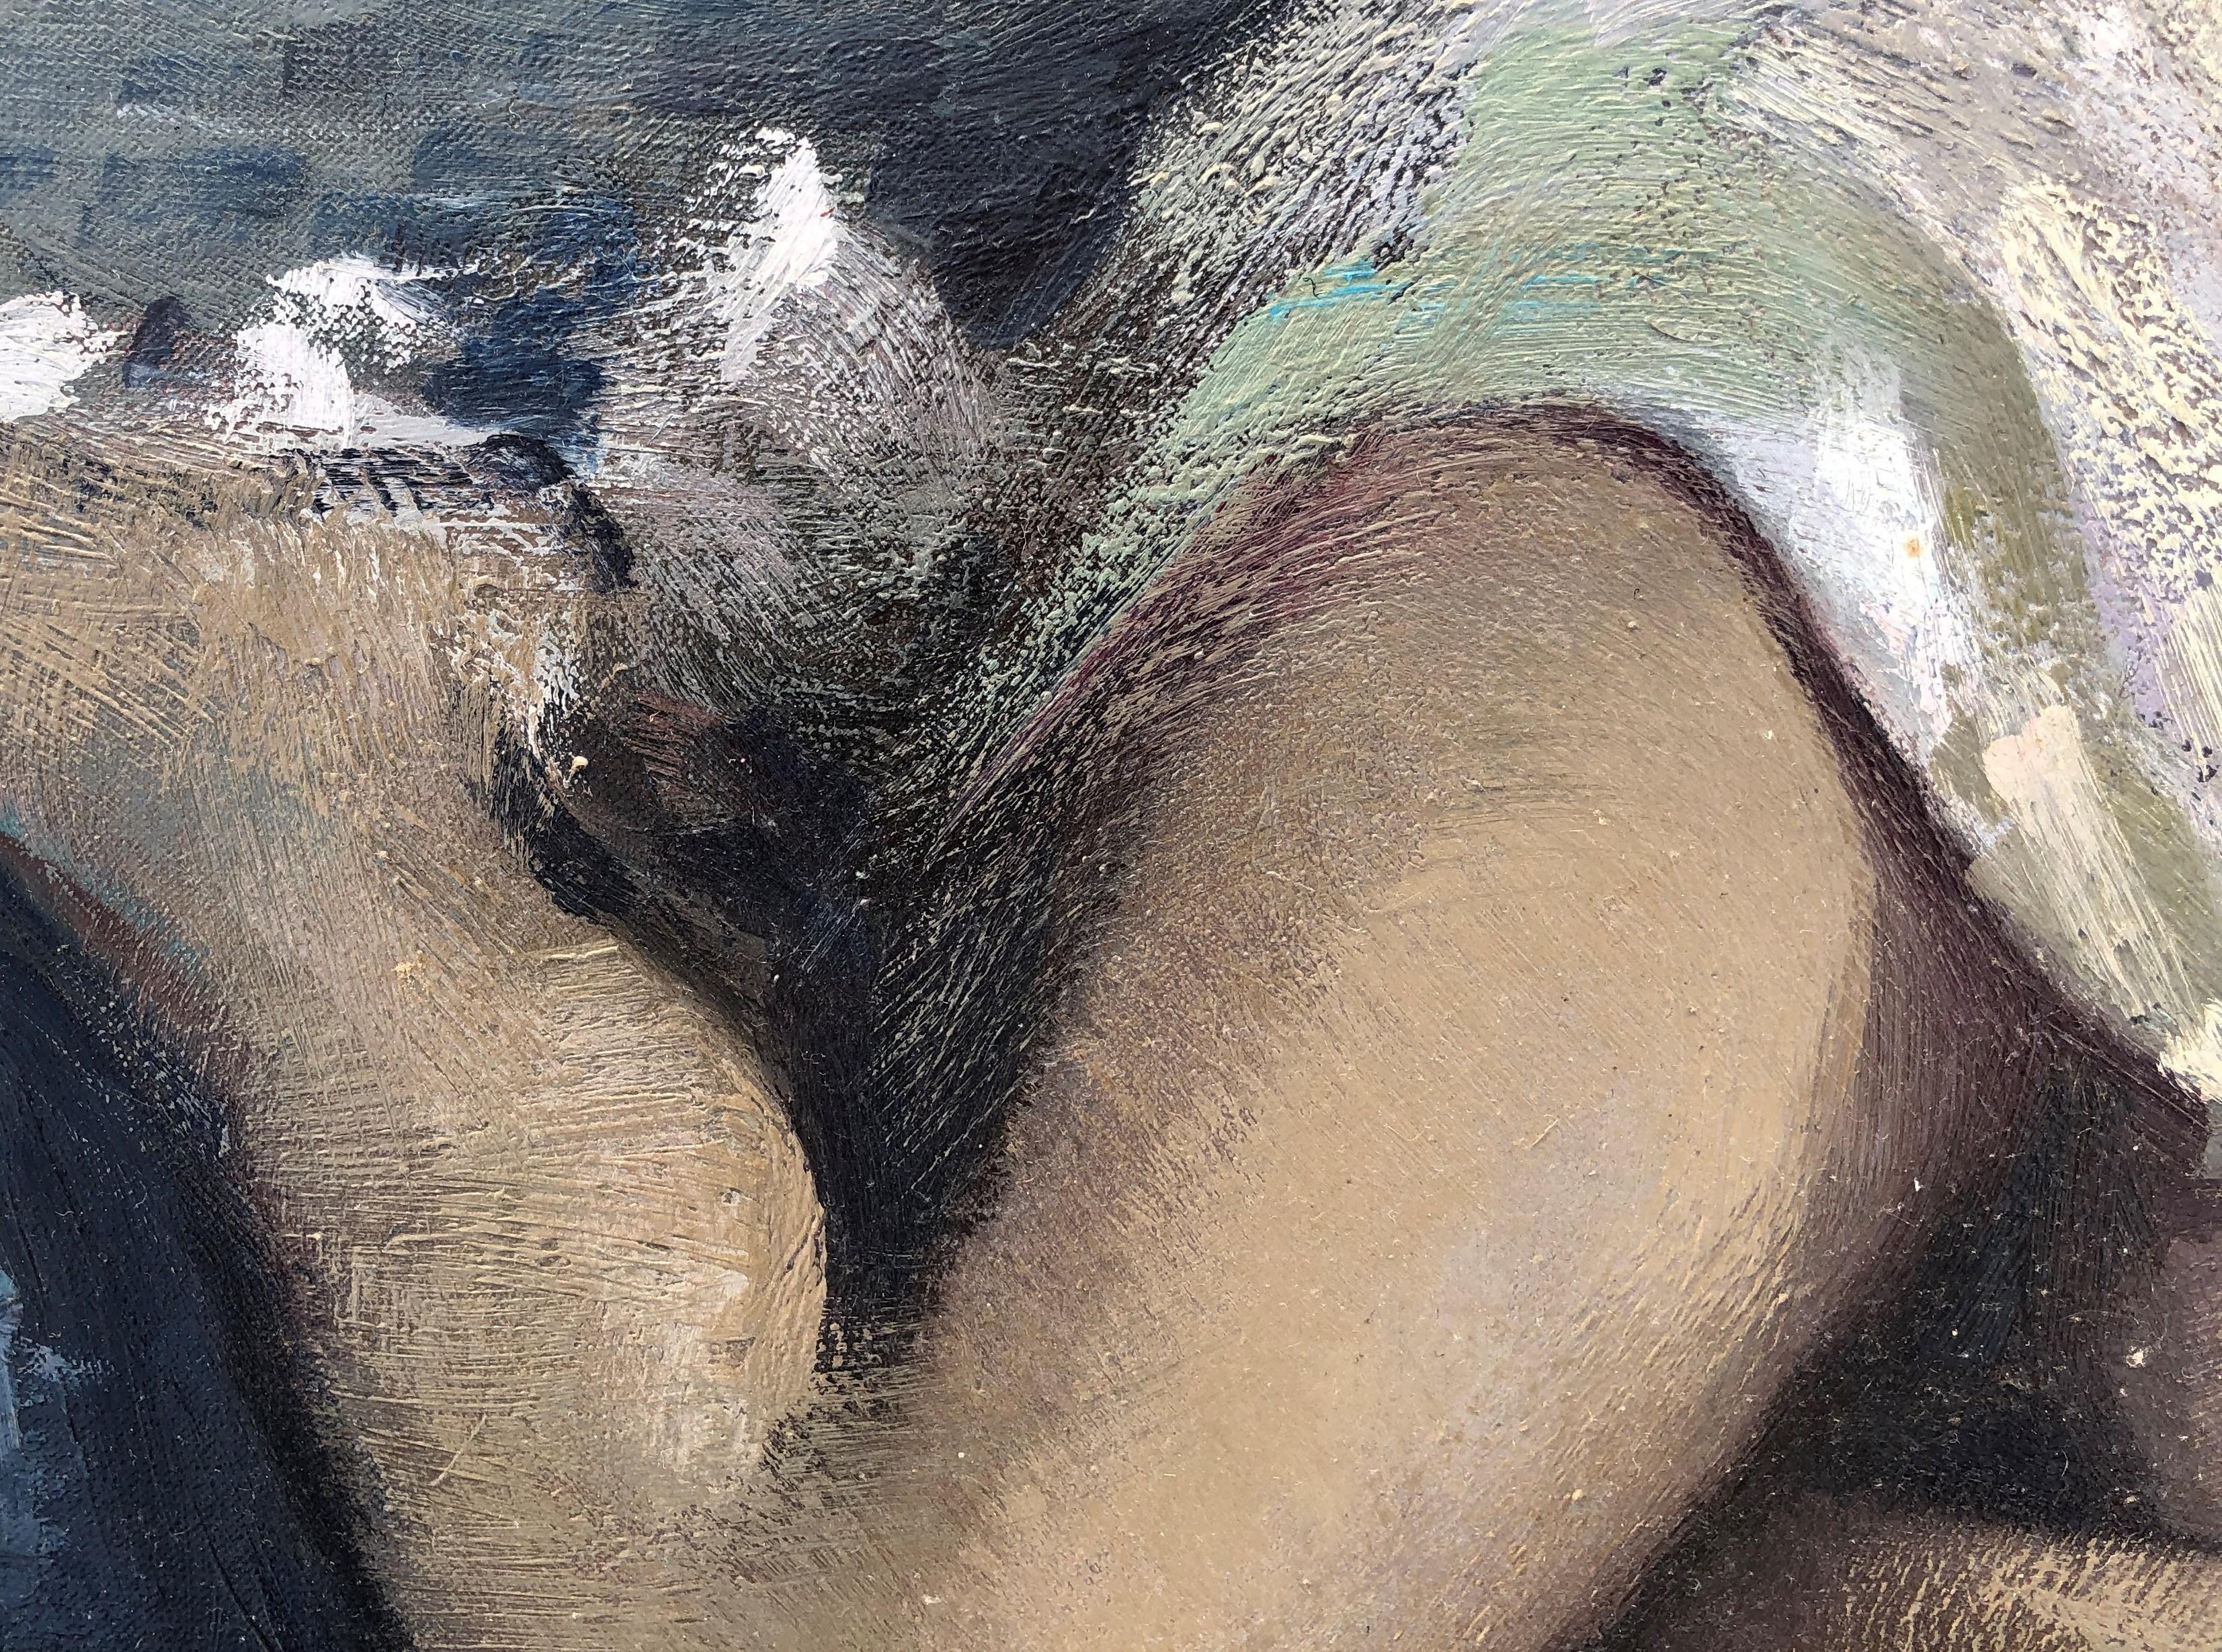 Die nackte Frau von Lloveras – Original-Gemälde in Öl auf Leinwand 2